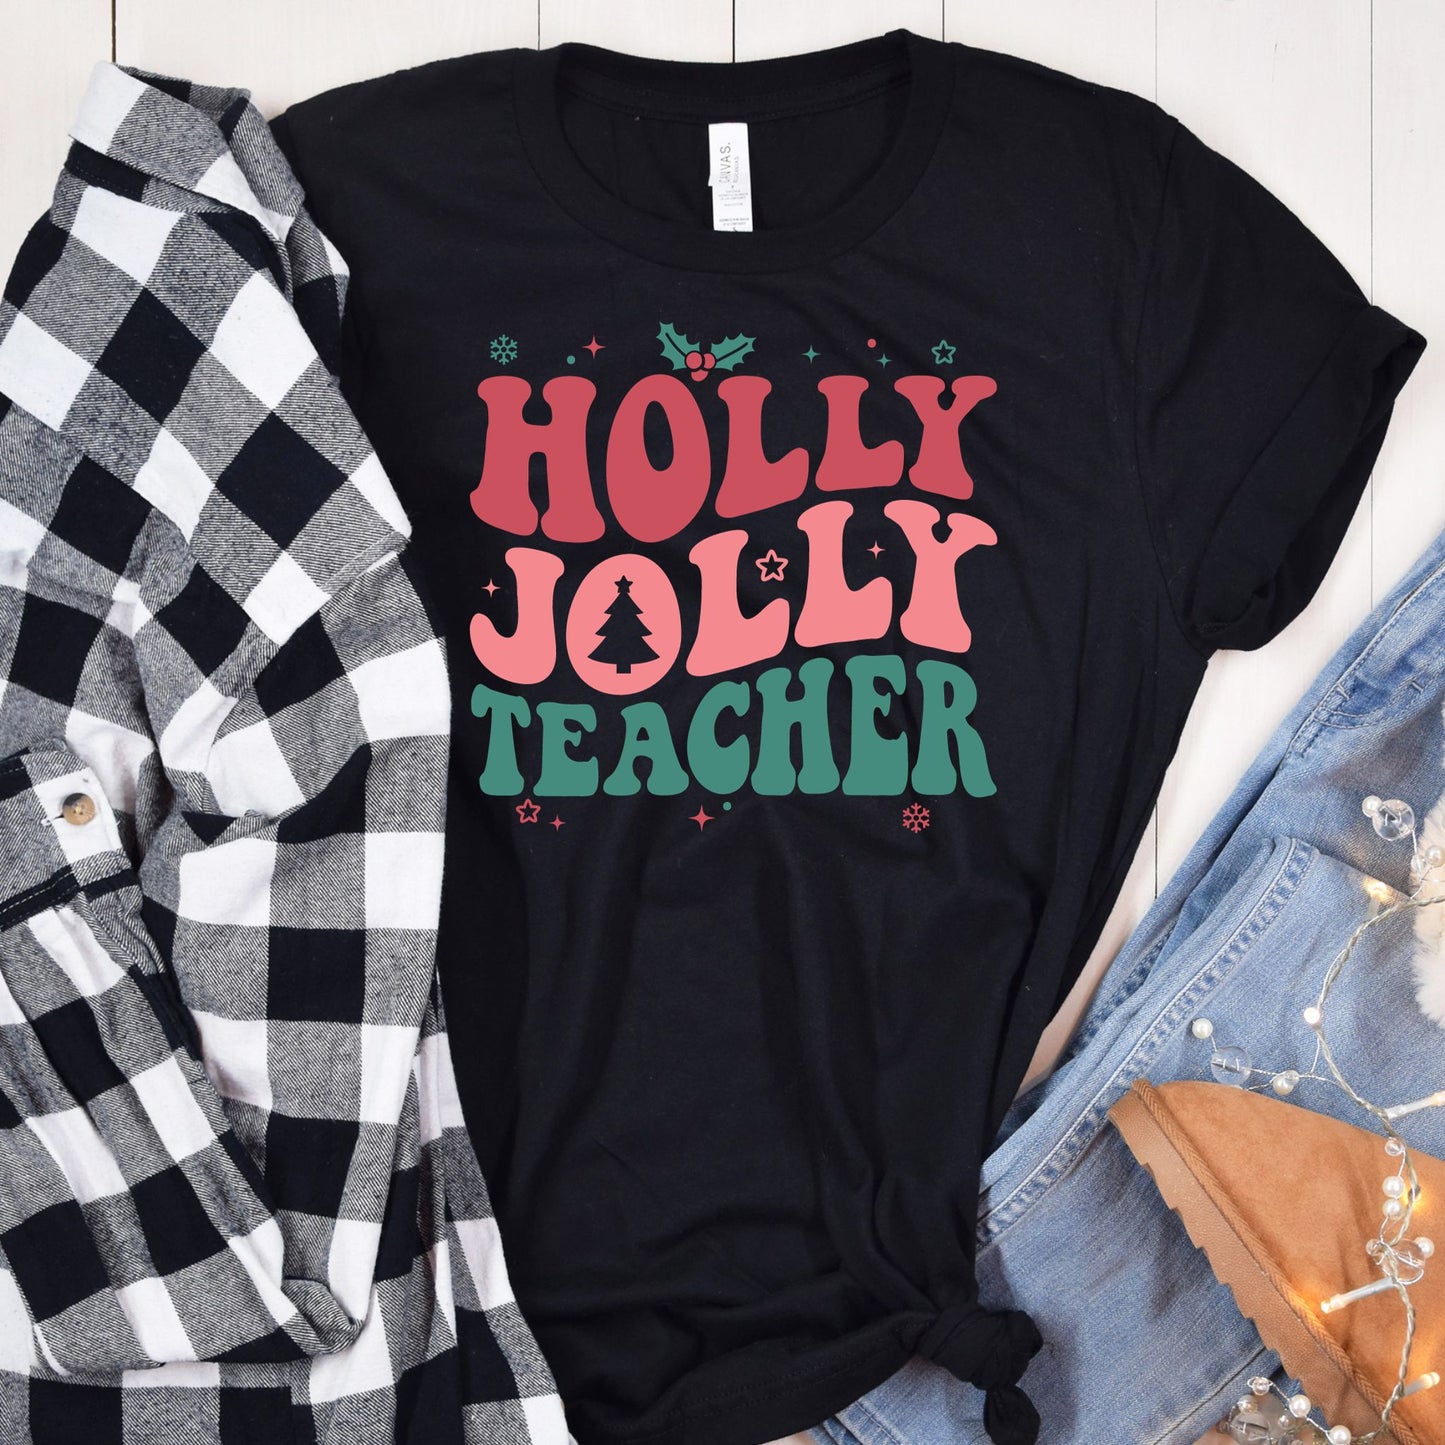 Holly Jolly Teacher Tee